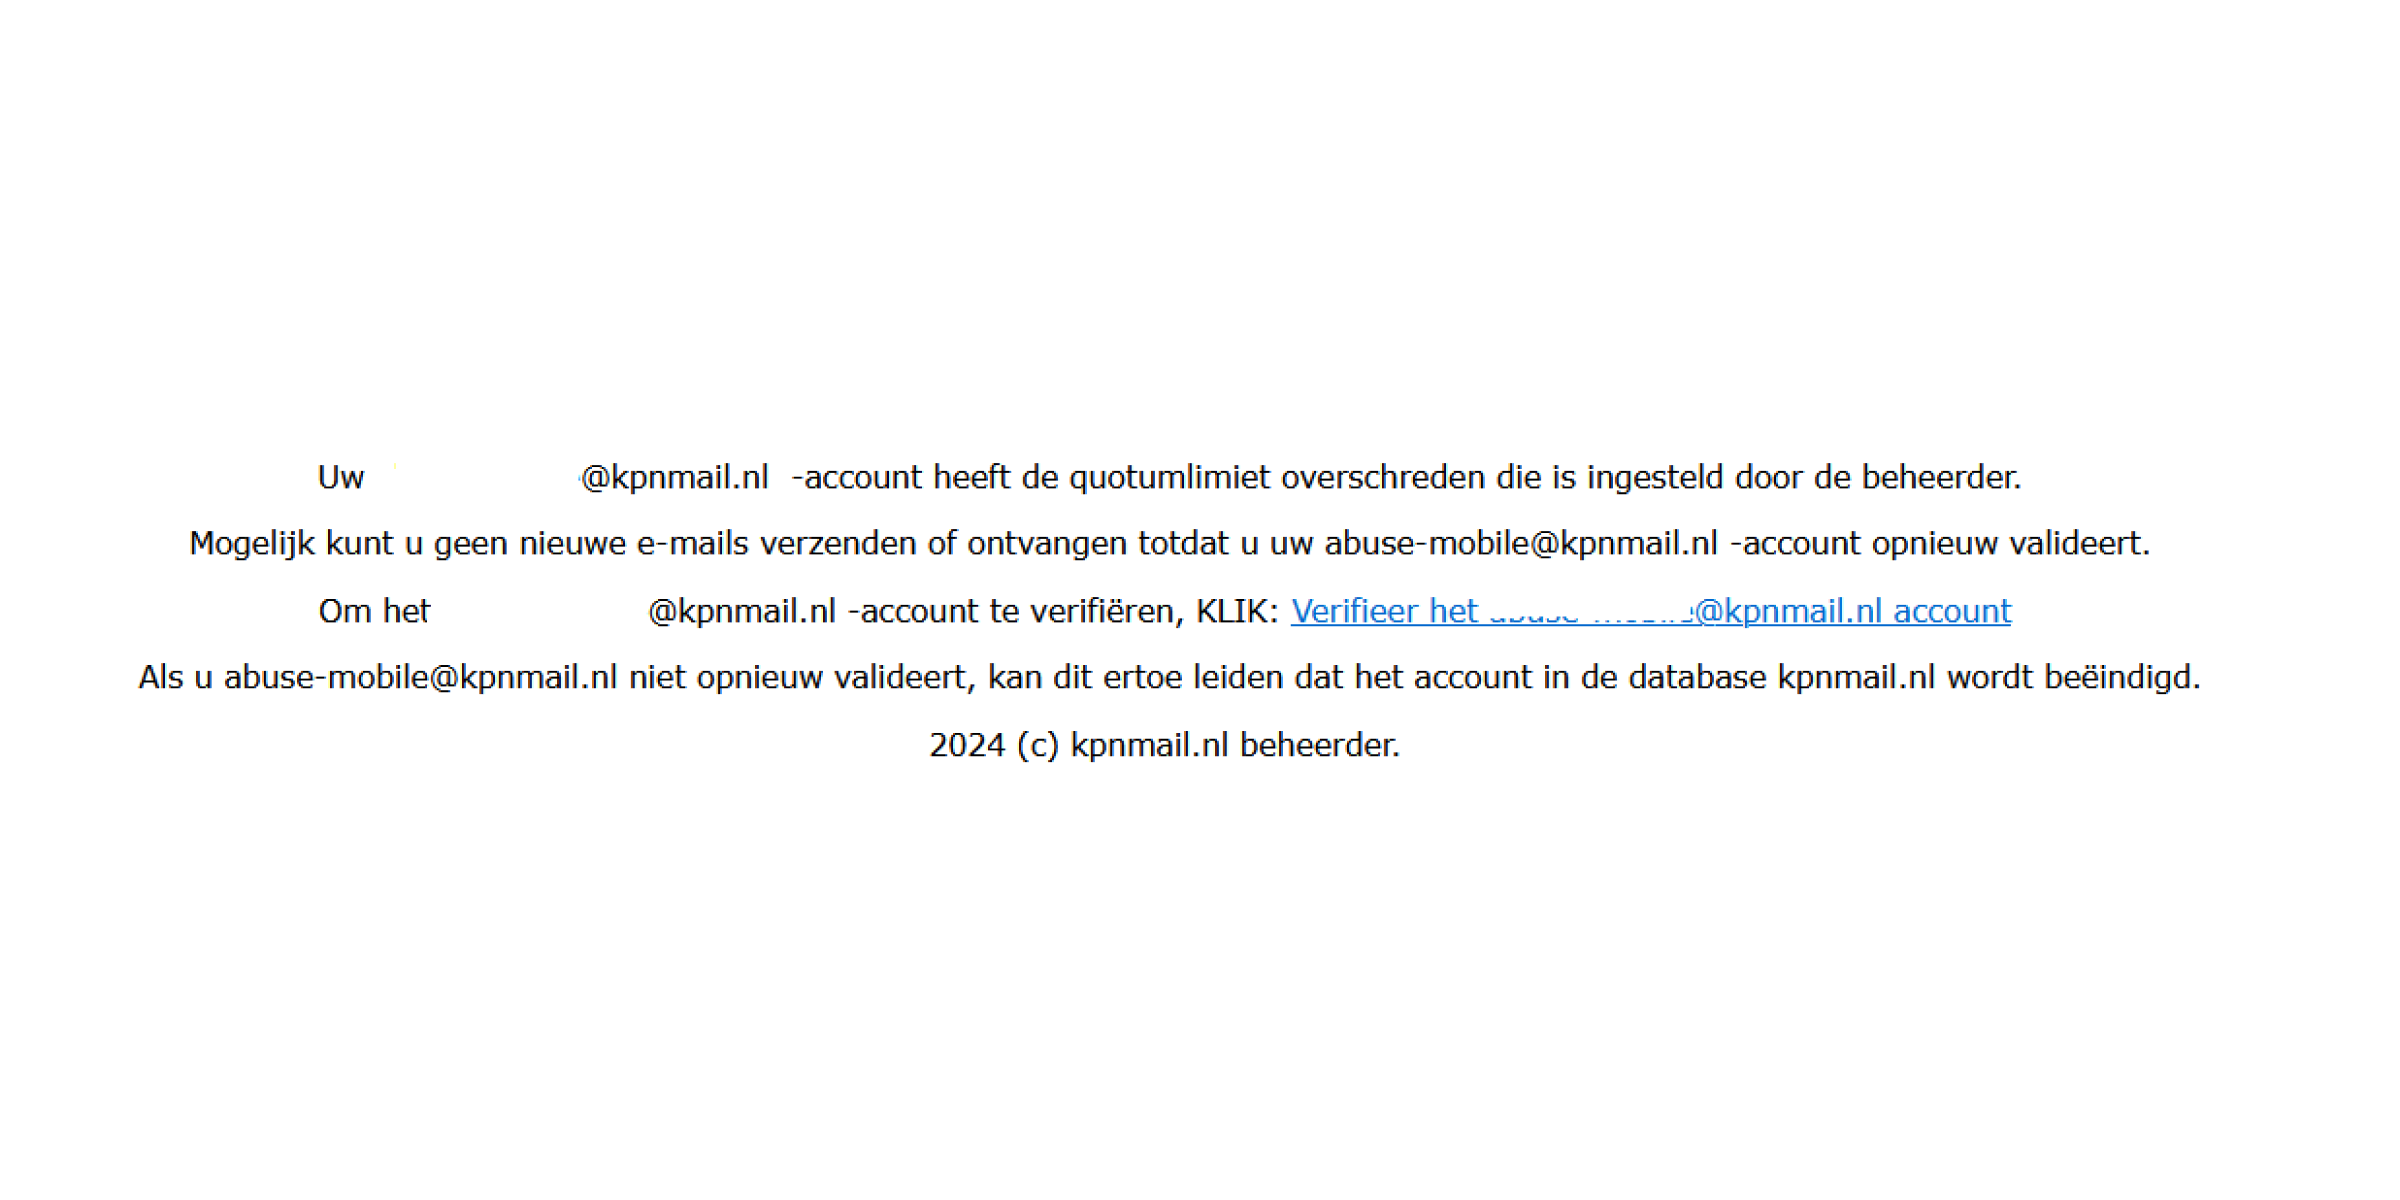 Voorbeeld van phishing mail met onderwerp: Uw ..@kpnmail.nl -account heeft de quotumlimiet